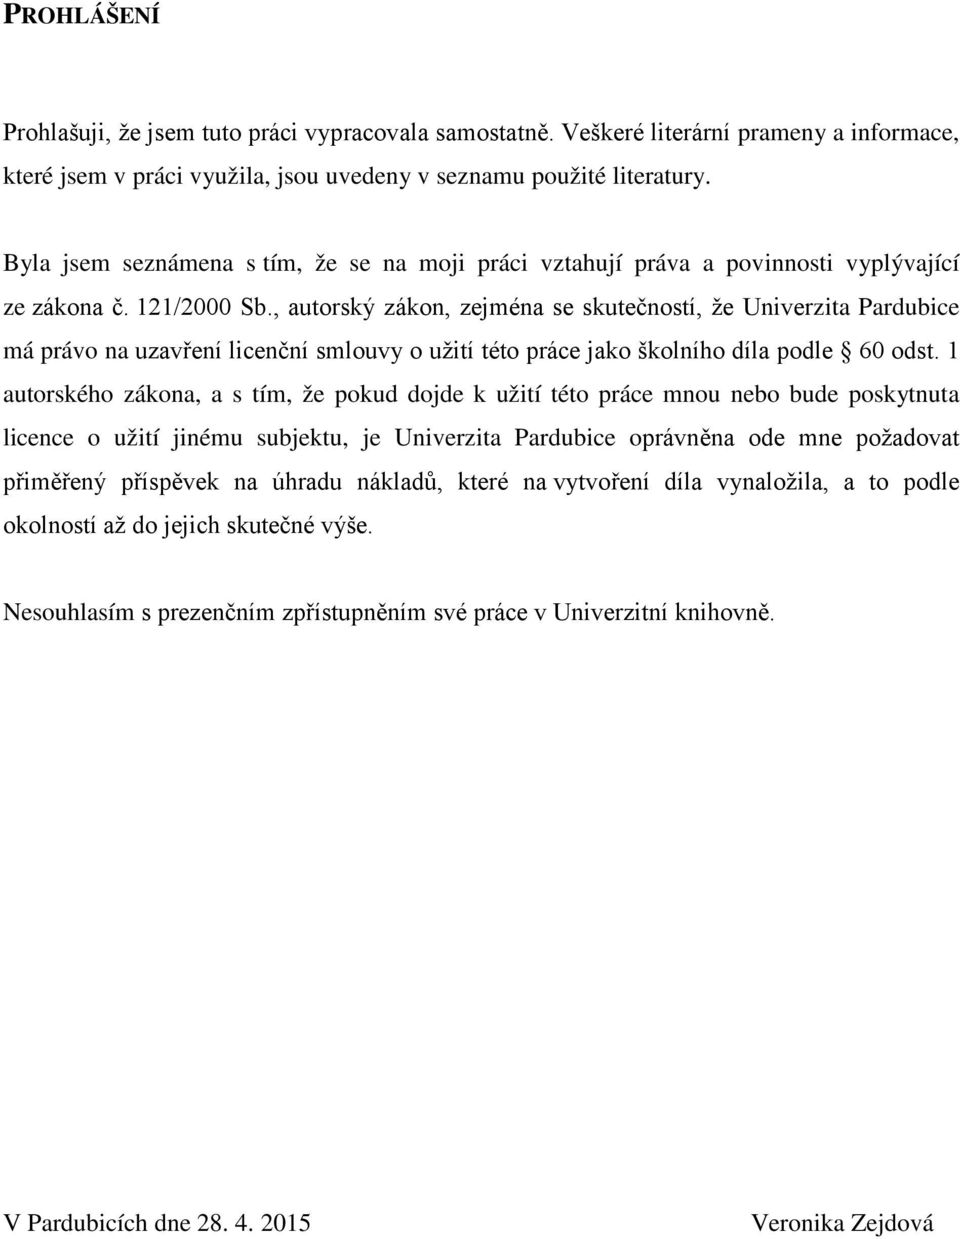 , autrský zákn, zejména se skutečnstí, že Univerzita Pardubice má práv na uzavření licenční smluvy užití tét práce jak šklníh díla pdle 60 dst.